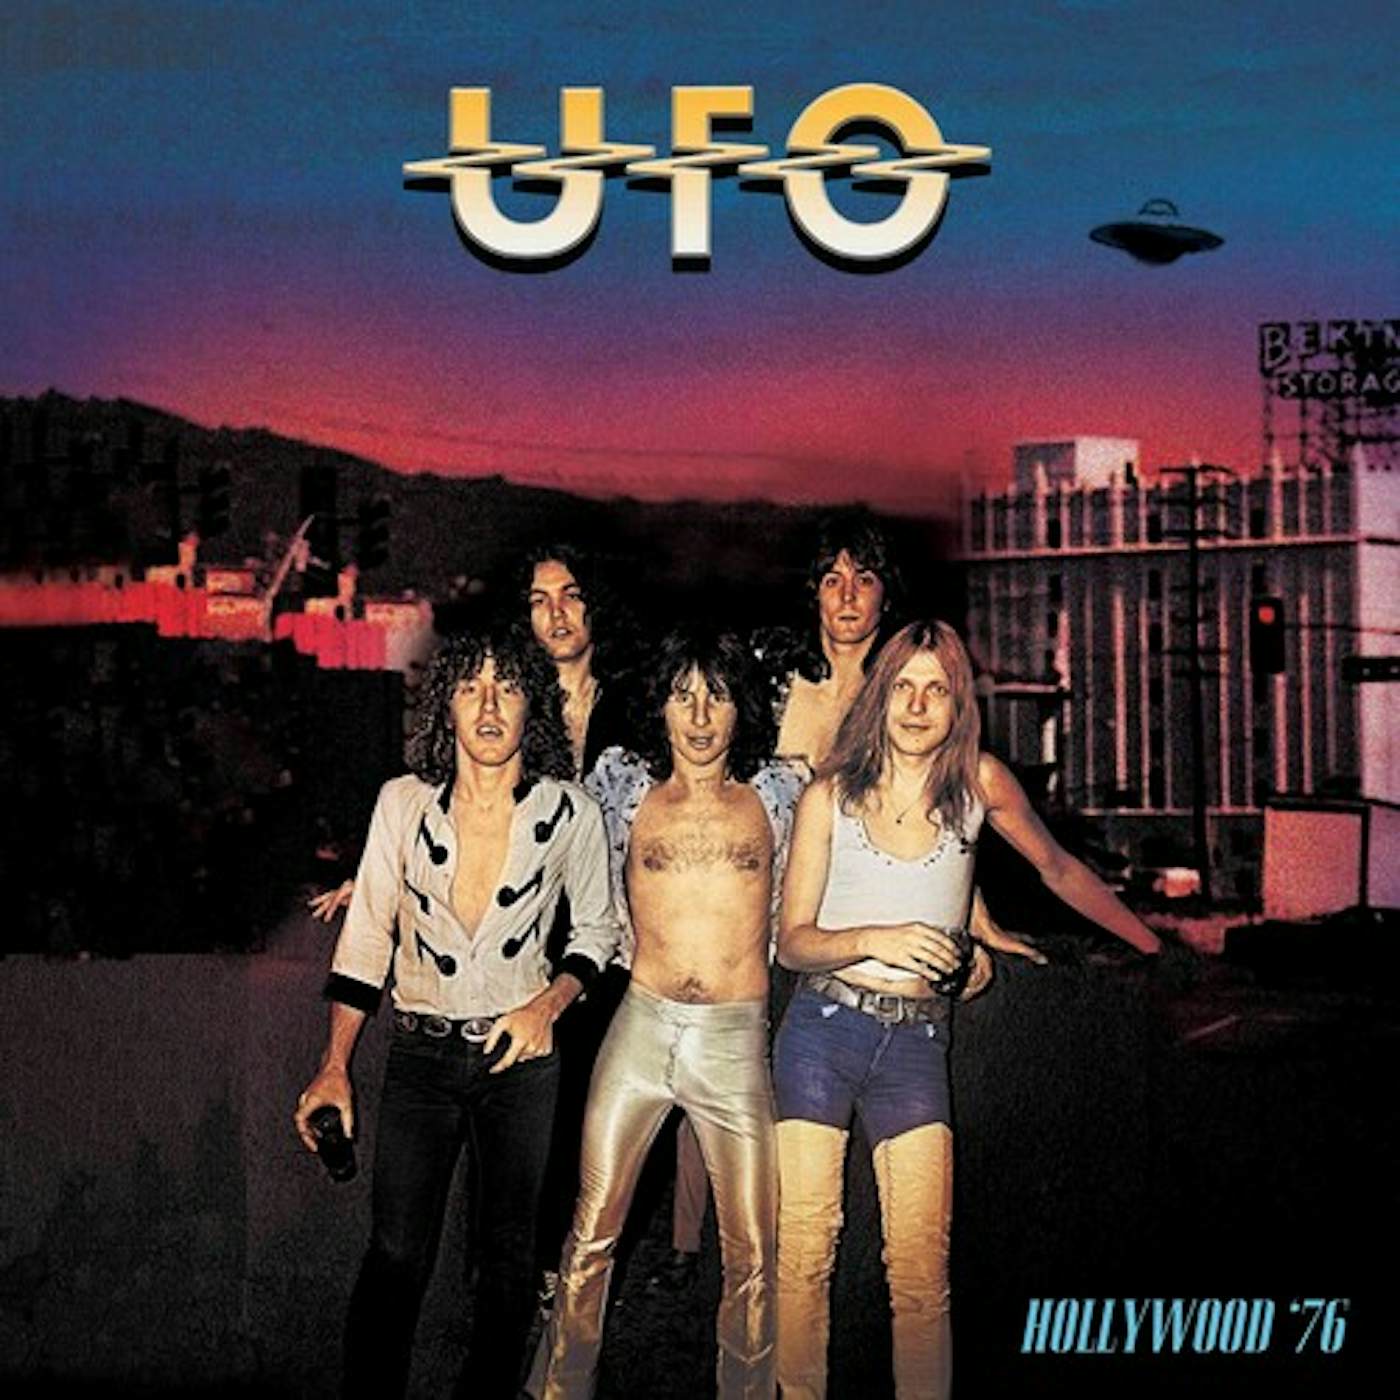 UFO HOLLYWOOD '76 - BLUE/RED SPLATTER Vinyl Record